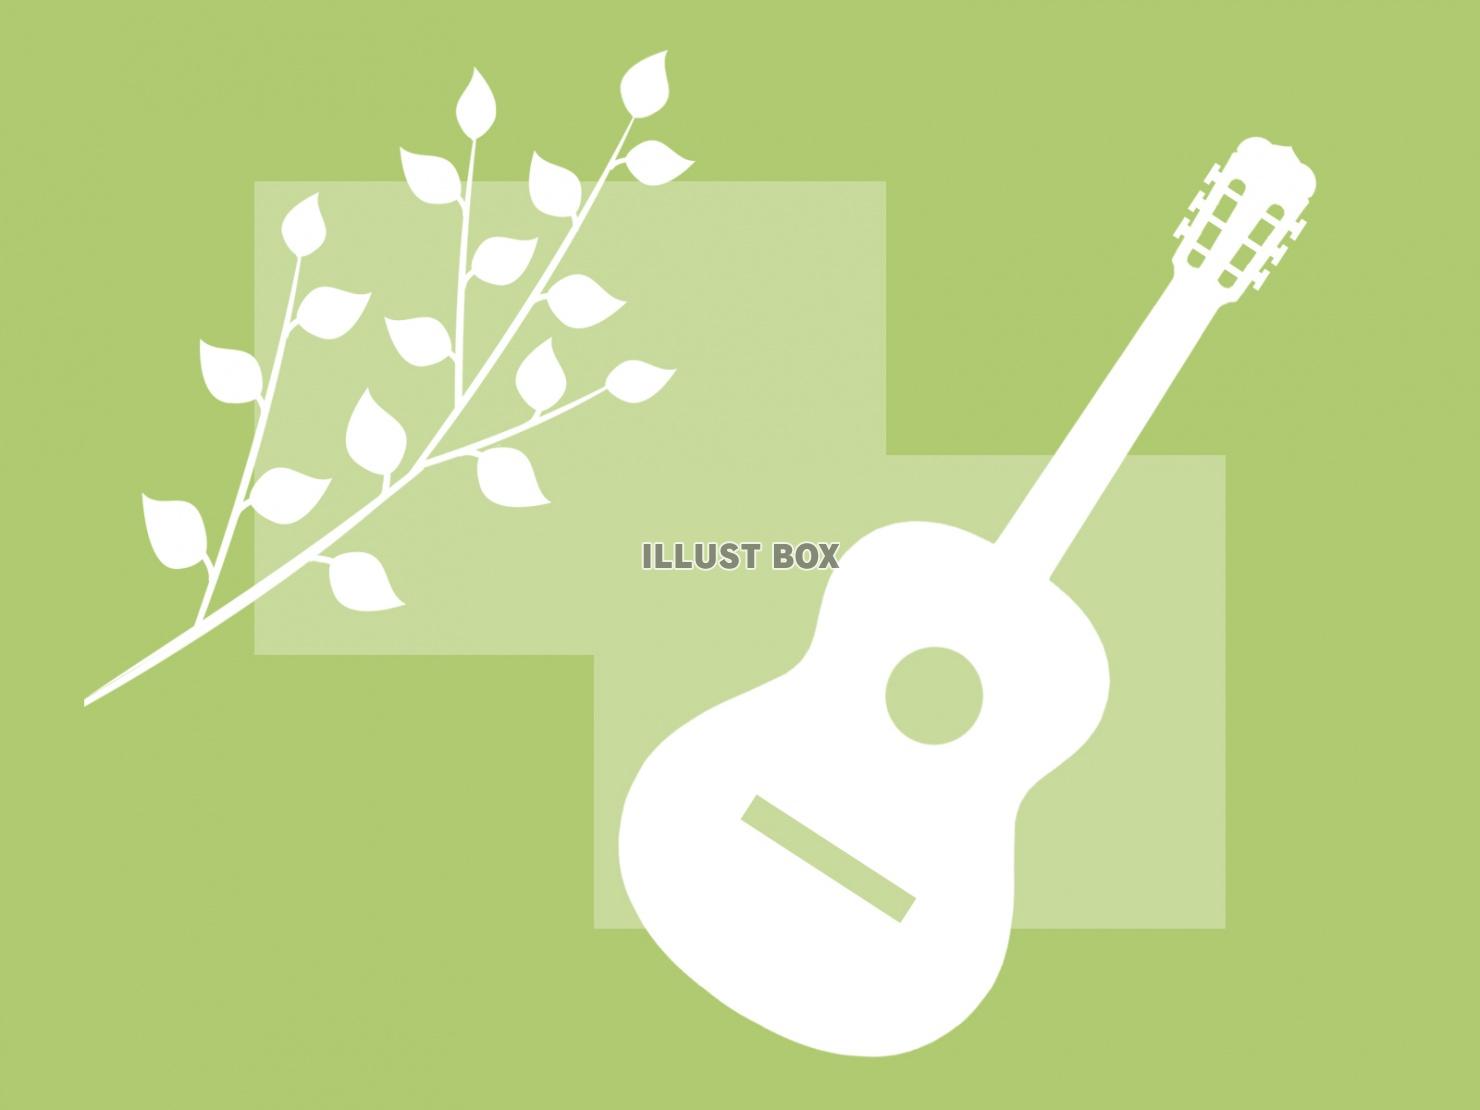 無料イラスト ギターと木の葉っぱの壁紙シンプル背景素材イラスト